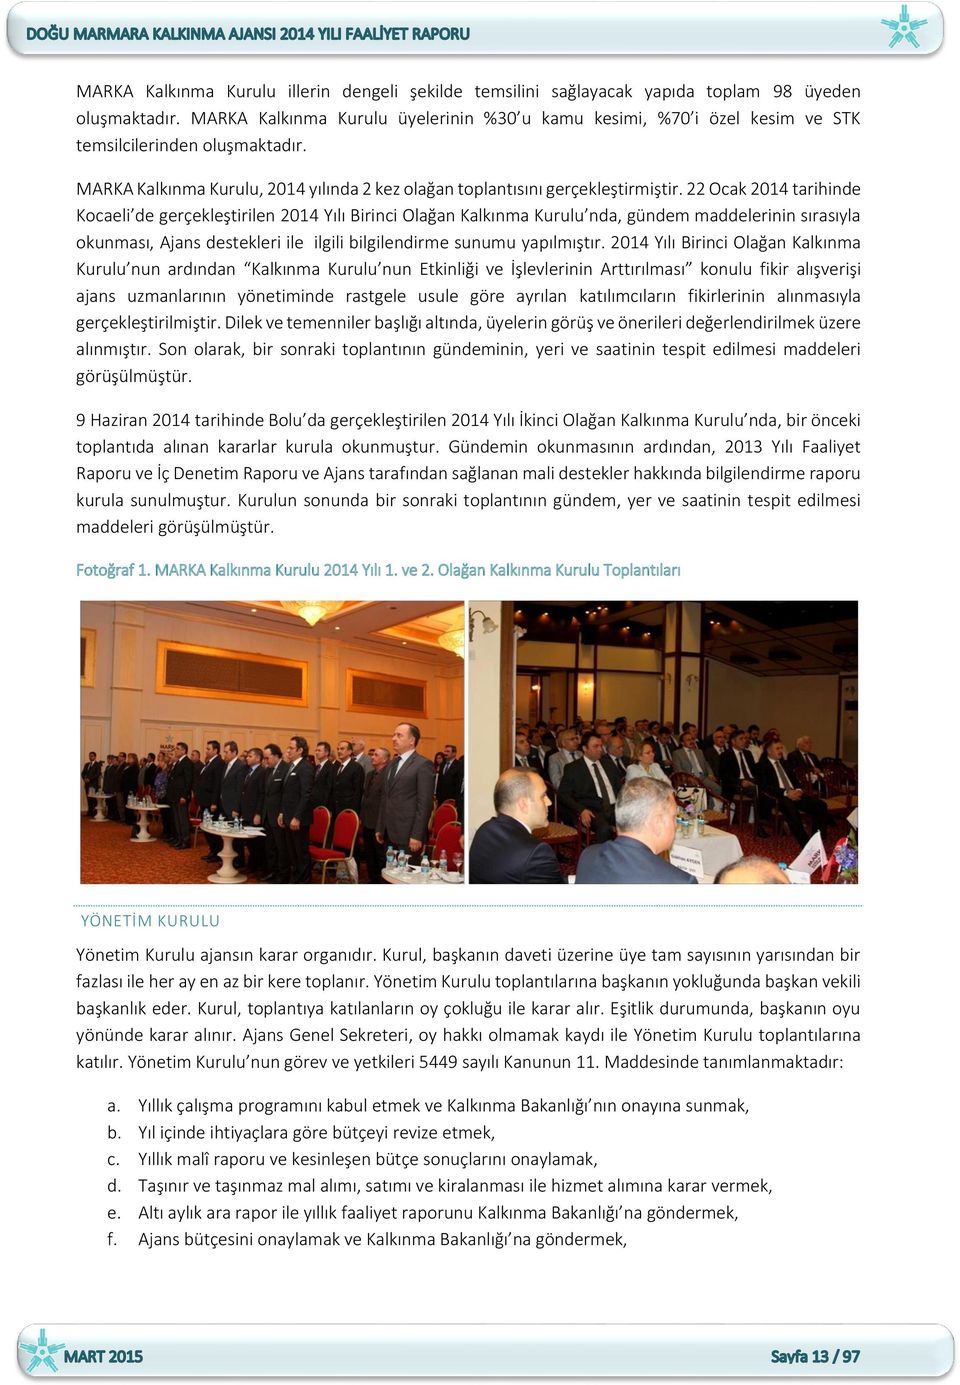 22 Ocak 2014 tarihinde Kocaeli de gerçekleştirilen 2014 Yılı Birinci Olağan Kalkınma Kurulu nda, gündem maddelerinin sırasıyla okunması, Ajans destekleri ile ilgili bilgilendirme sunumu yapılmıştır.